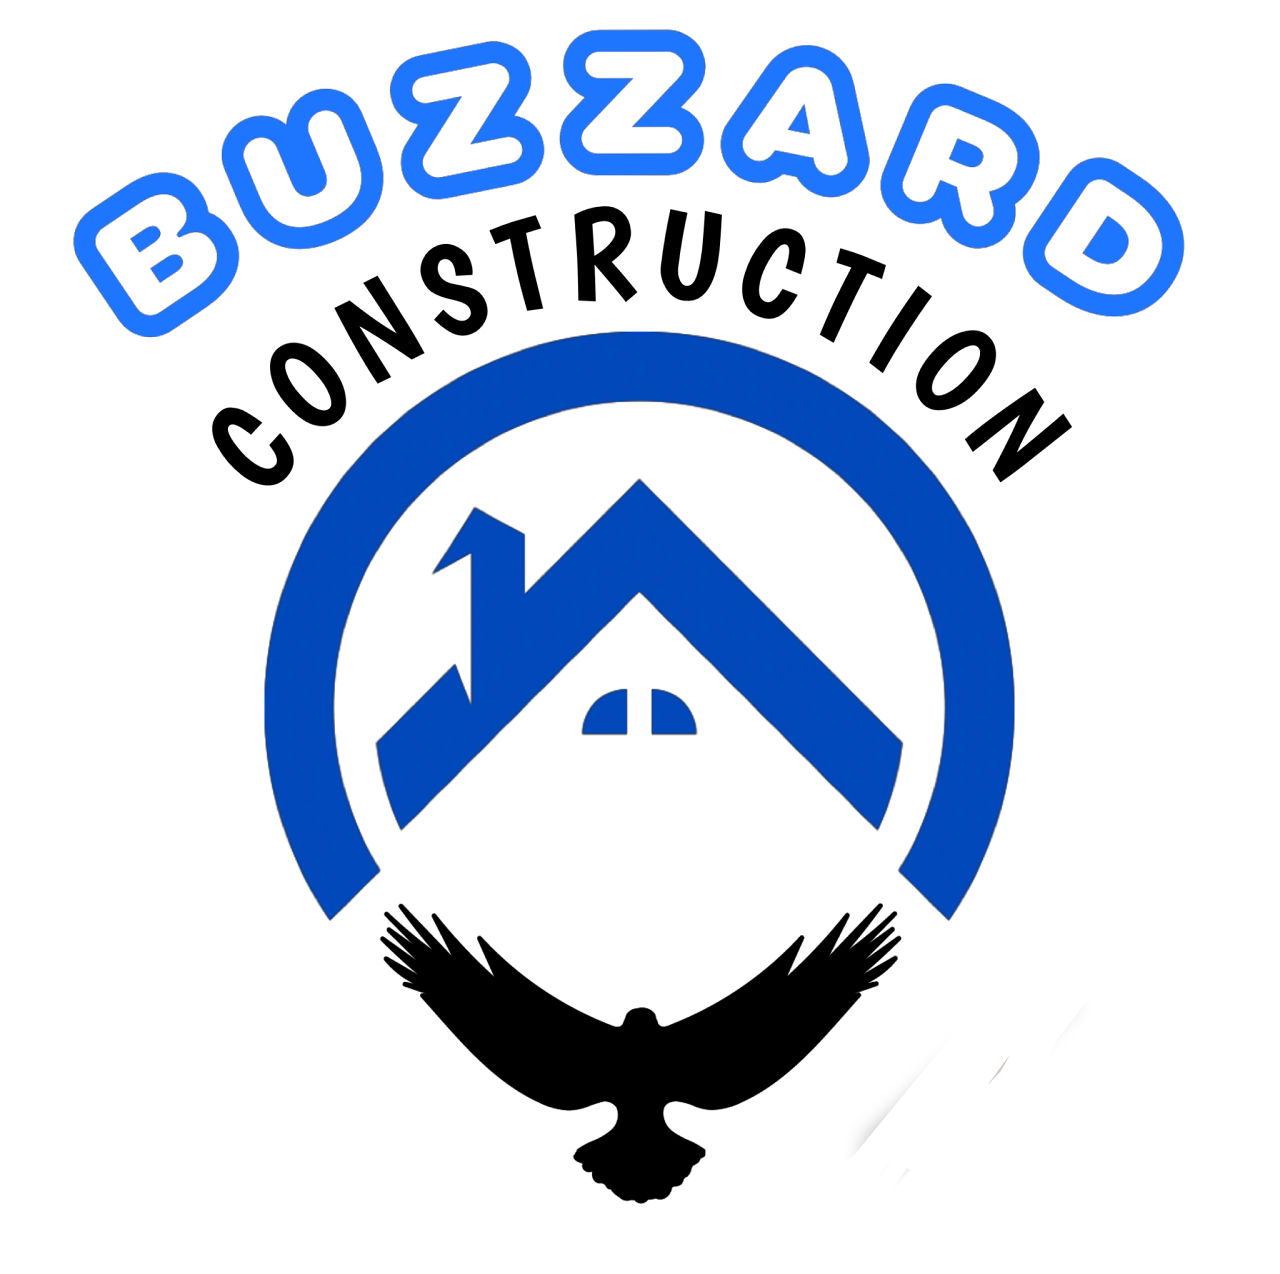 Buzzard Construction Logo